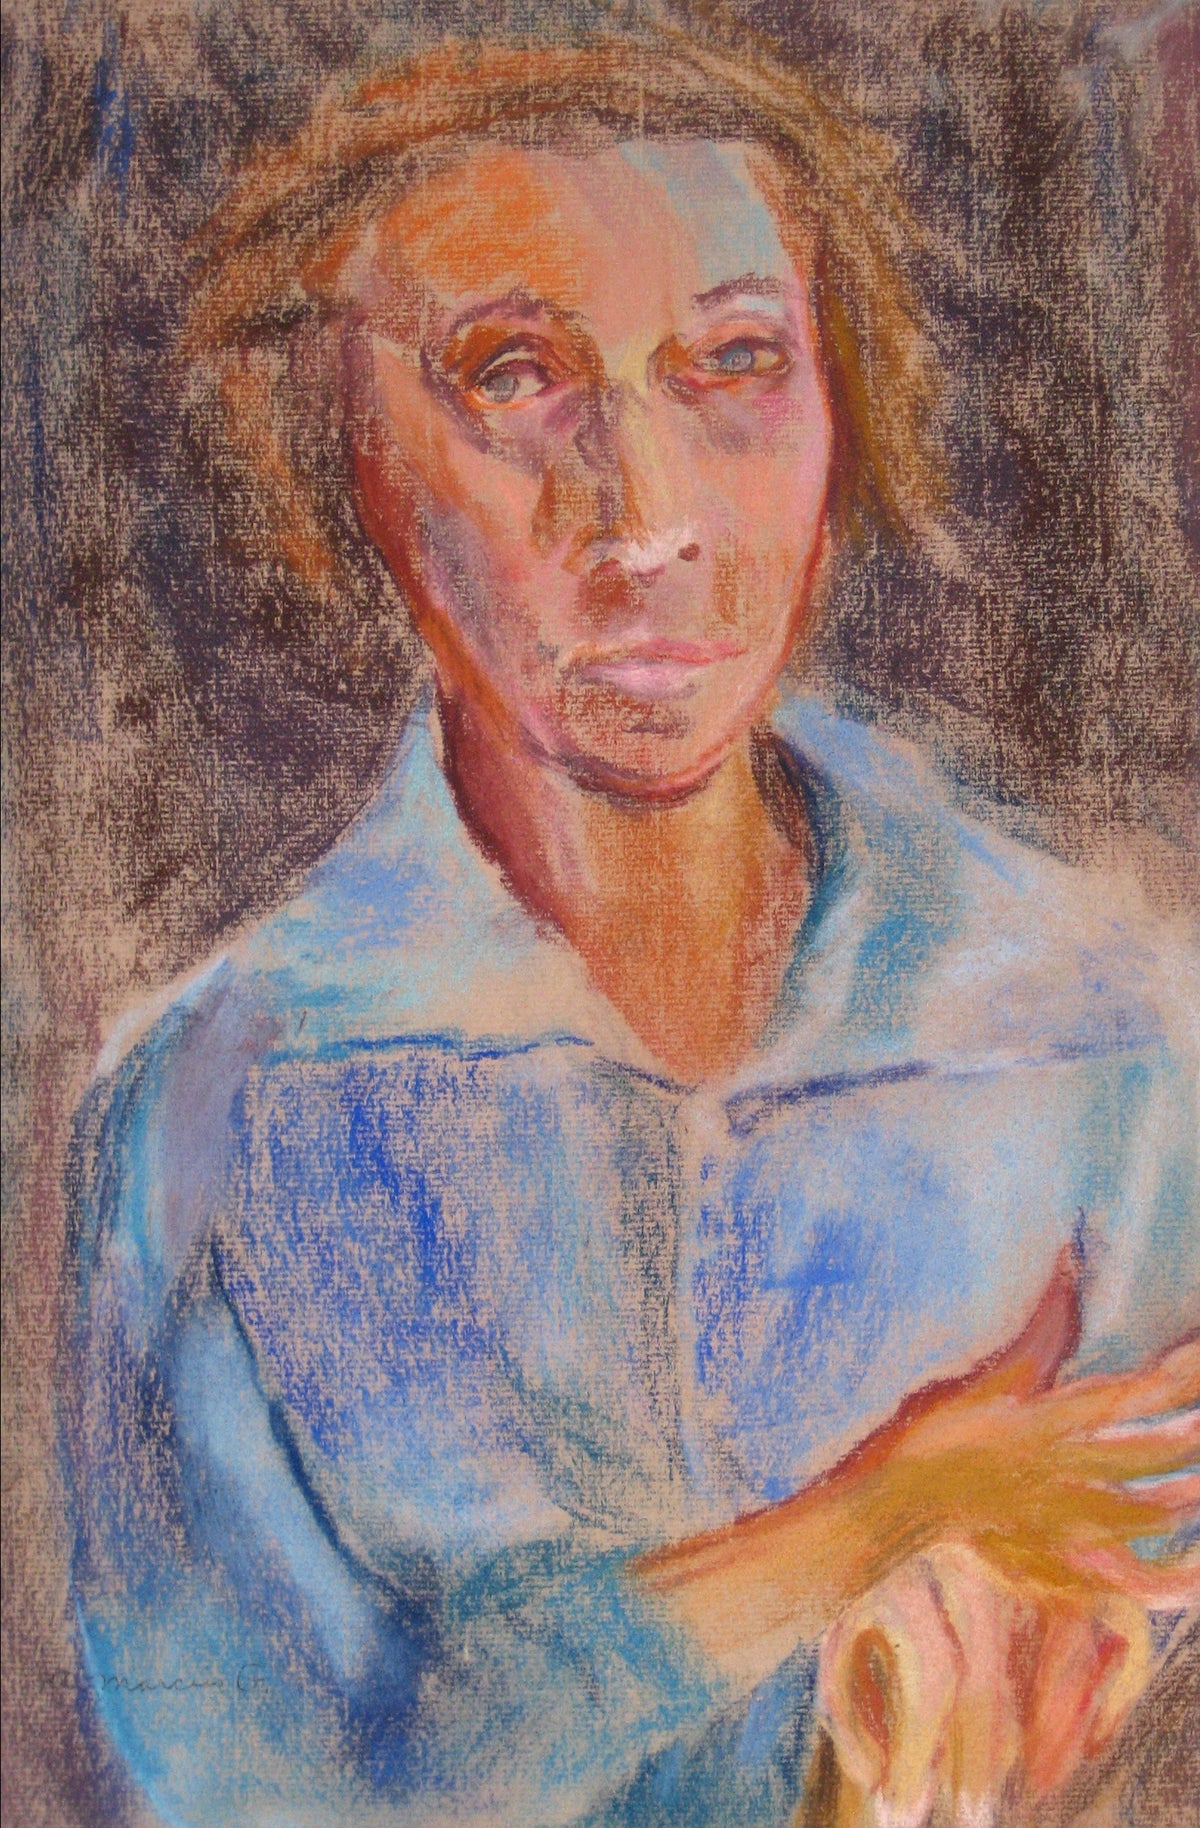 &lt;i&gt;Portrait of a Lady (Blue Shirt)&lt;/i&gt;&lt;br&gt;Pastel, 1950-60s&lt;br&gt;&lt;br&gt;#15279